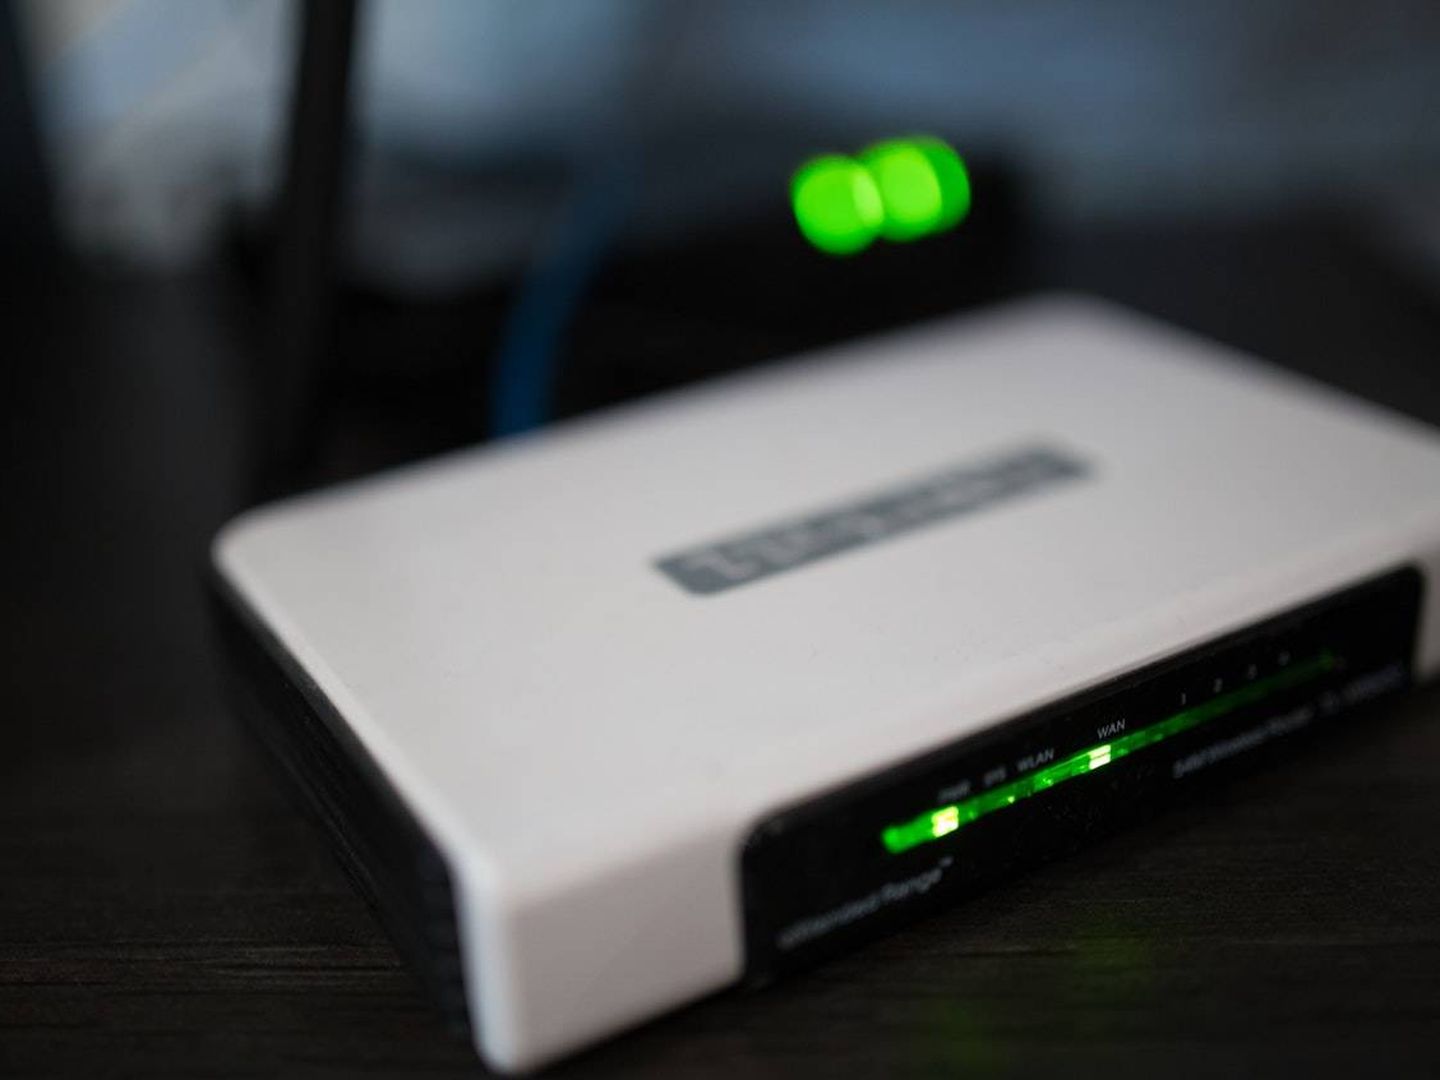 Aunque parezca que no hacen nada, las luces que hay en el router pueden delatar que alguien se está conectado a nuestra wifi (Imagen: Pexels)